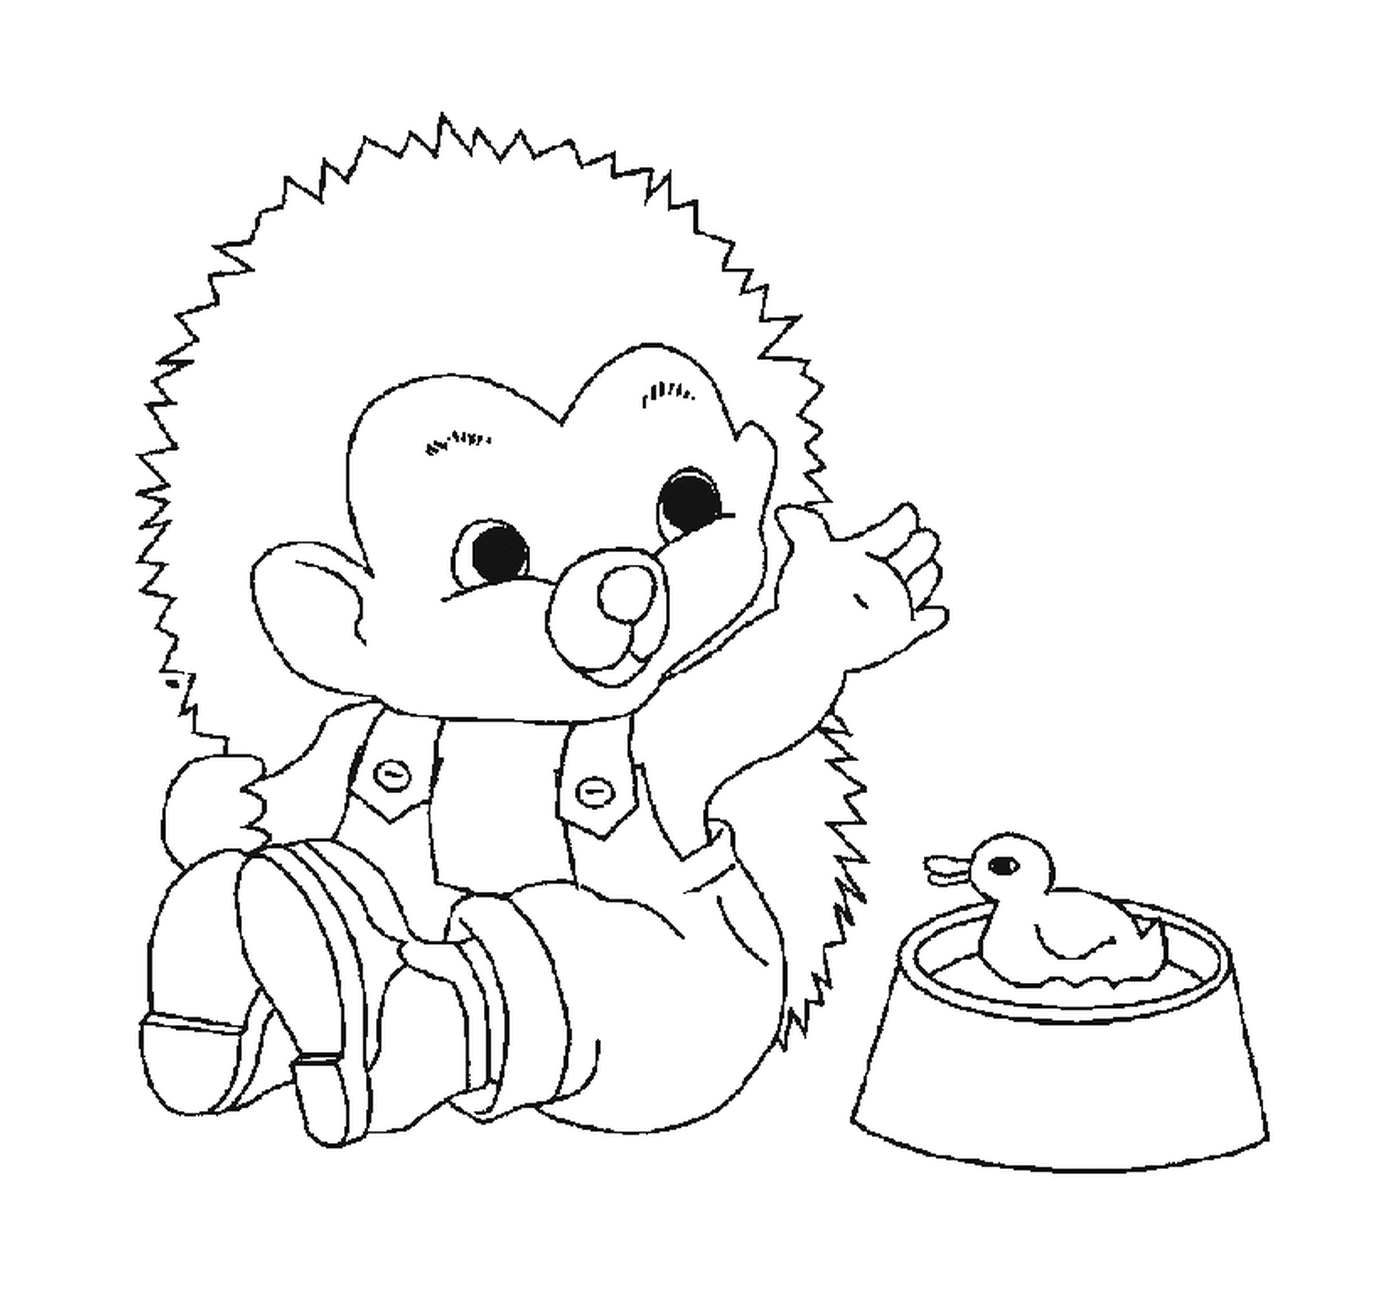  Hedgehog e pato 